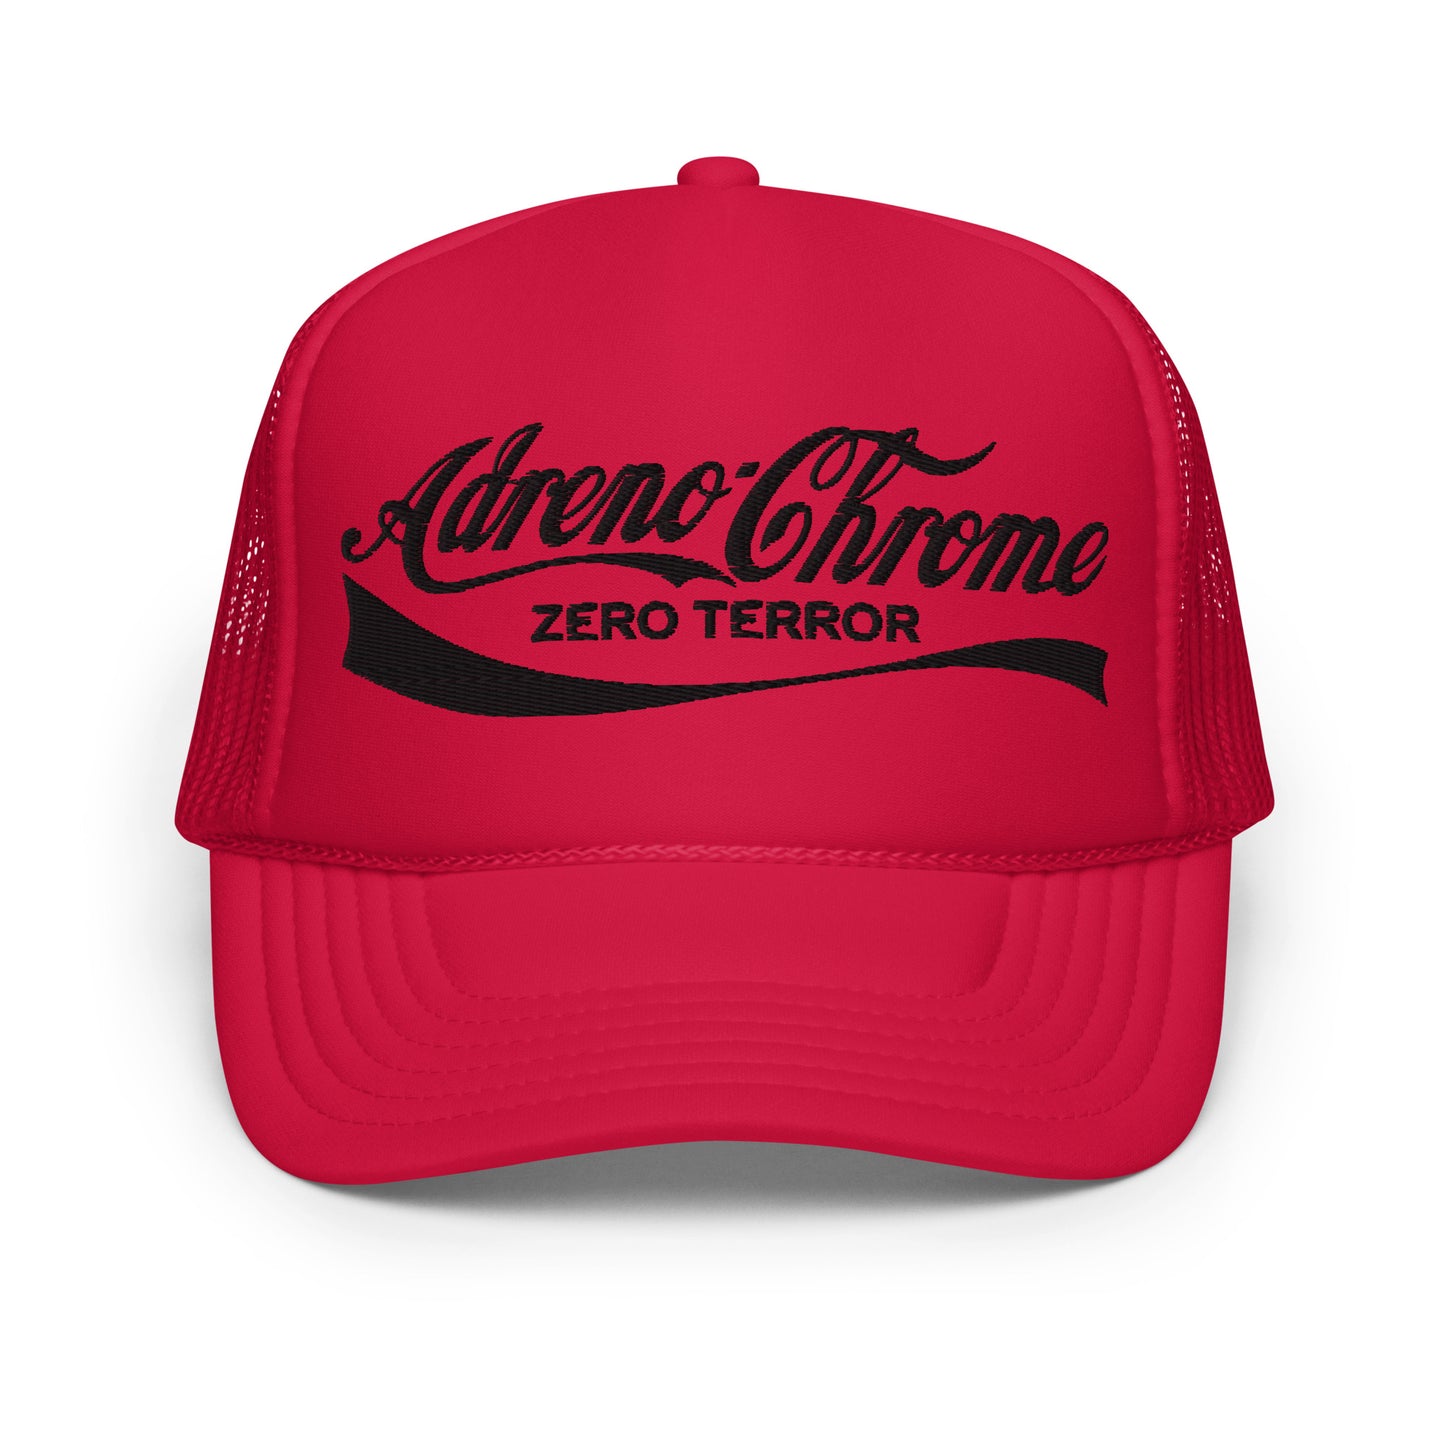 Adreno-Chrome Zero Terror Foam Trucker Hat